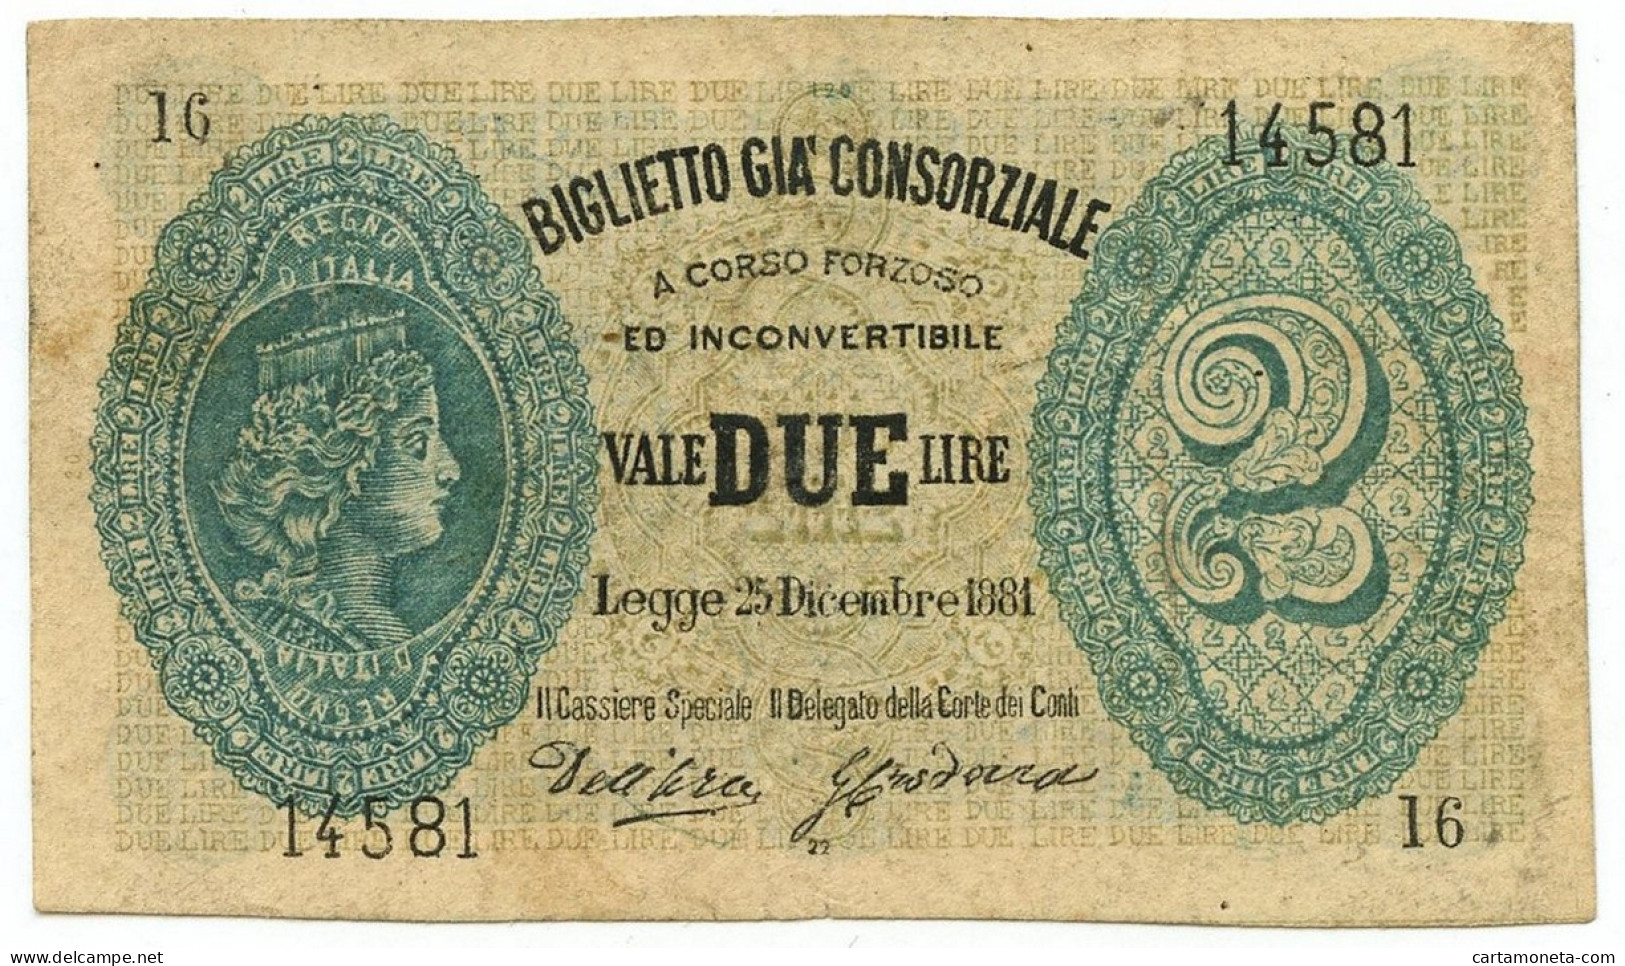 2 LIRE FALSO D'EPOCA BIGLIETTO GIÀ CONSORZIALE REGNO D'ITALIA 25/12/1881 BB - [ 8] Fictifs & Specimens